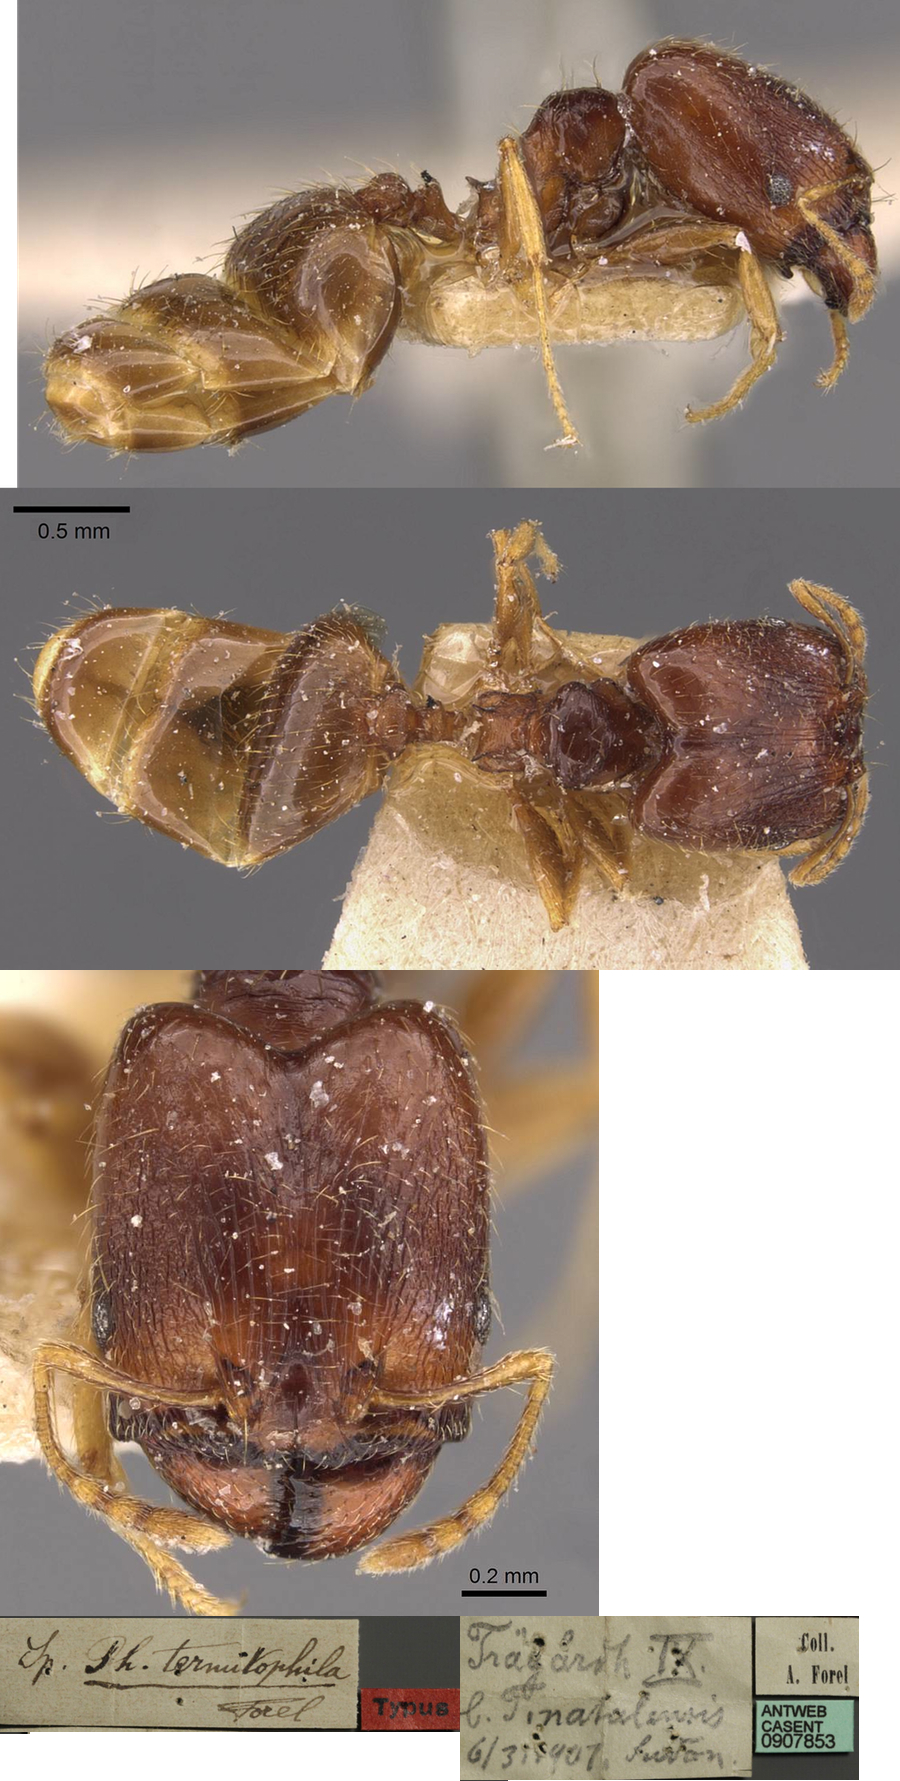 Pheidole termitophila major